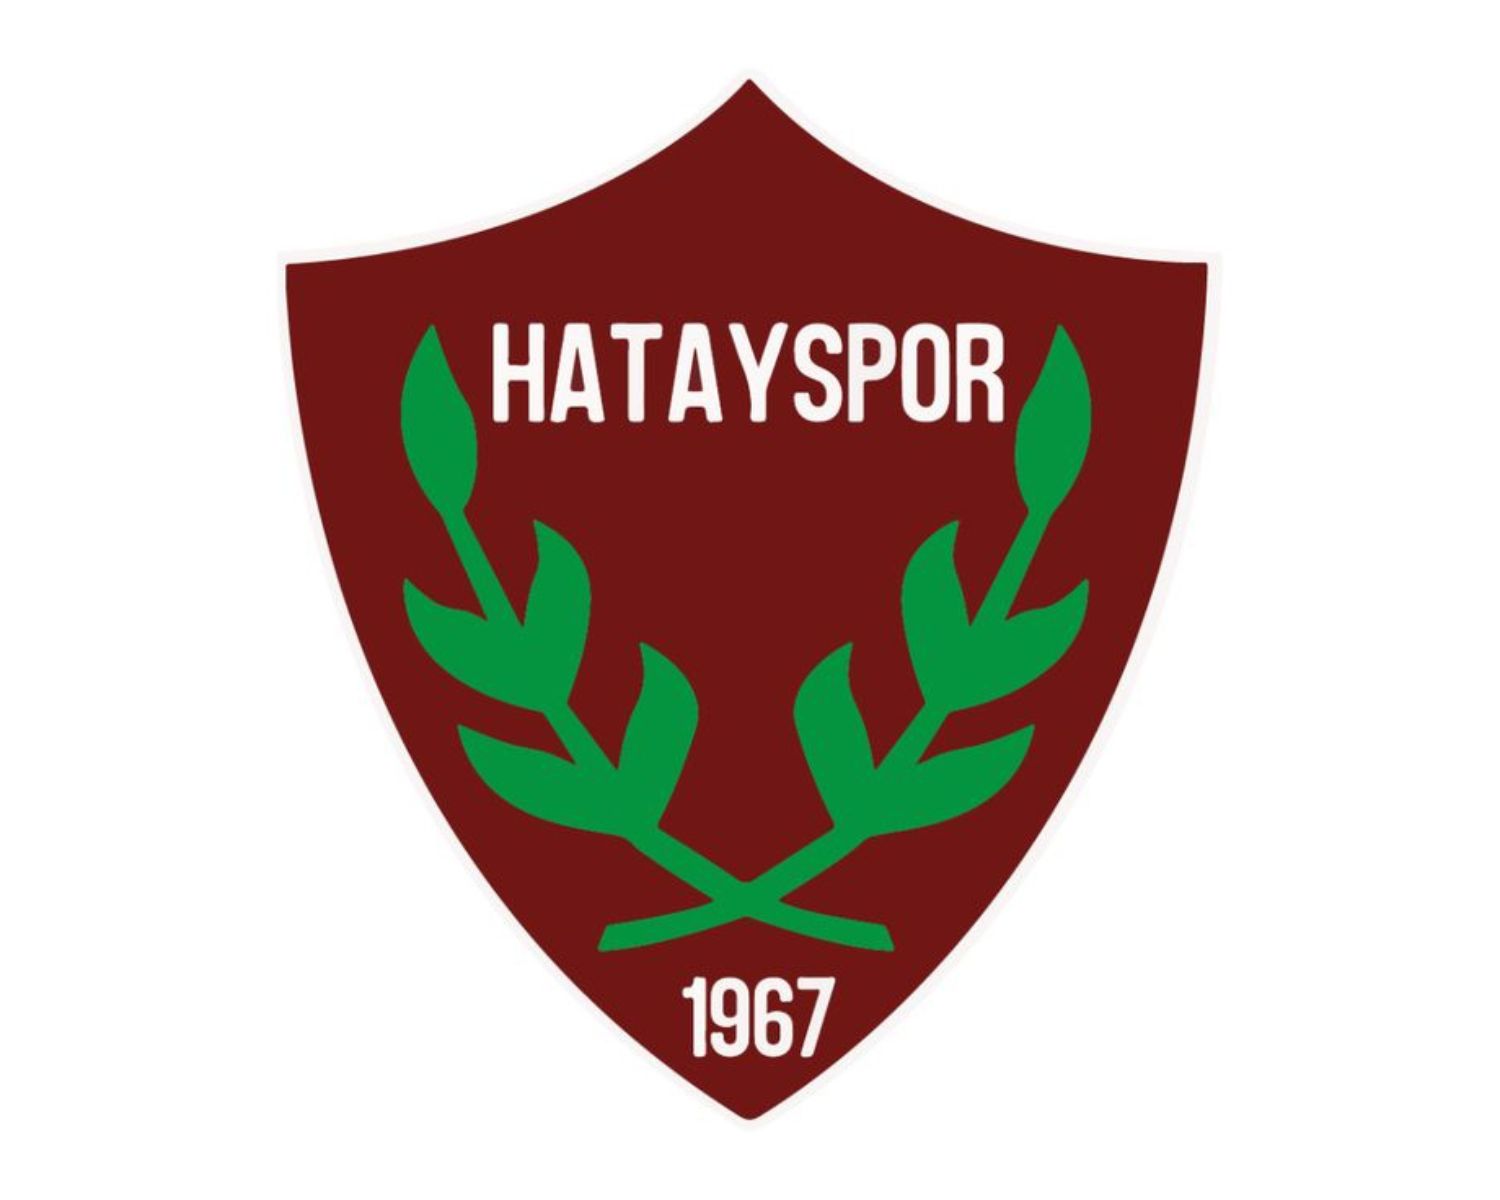 hatayspor-18-football-club-facts